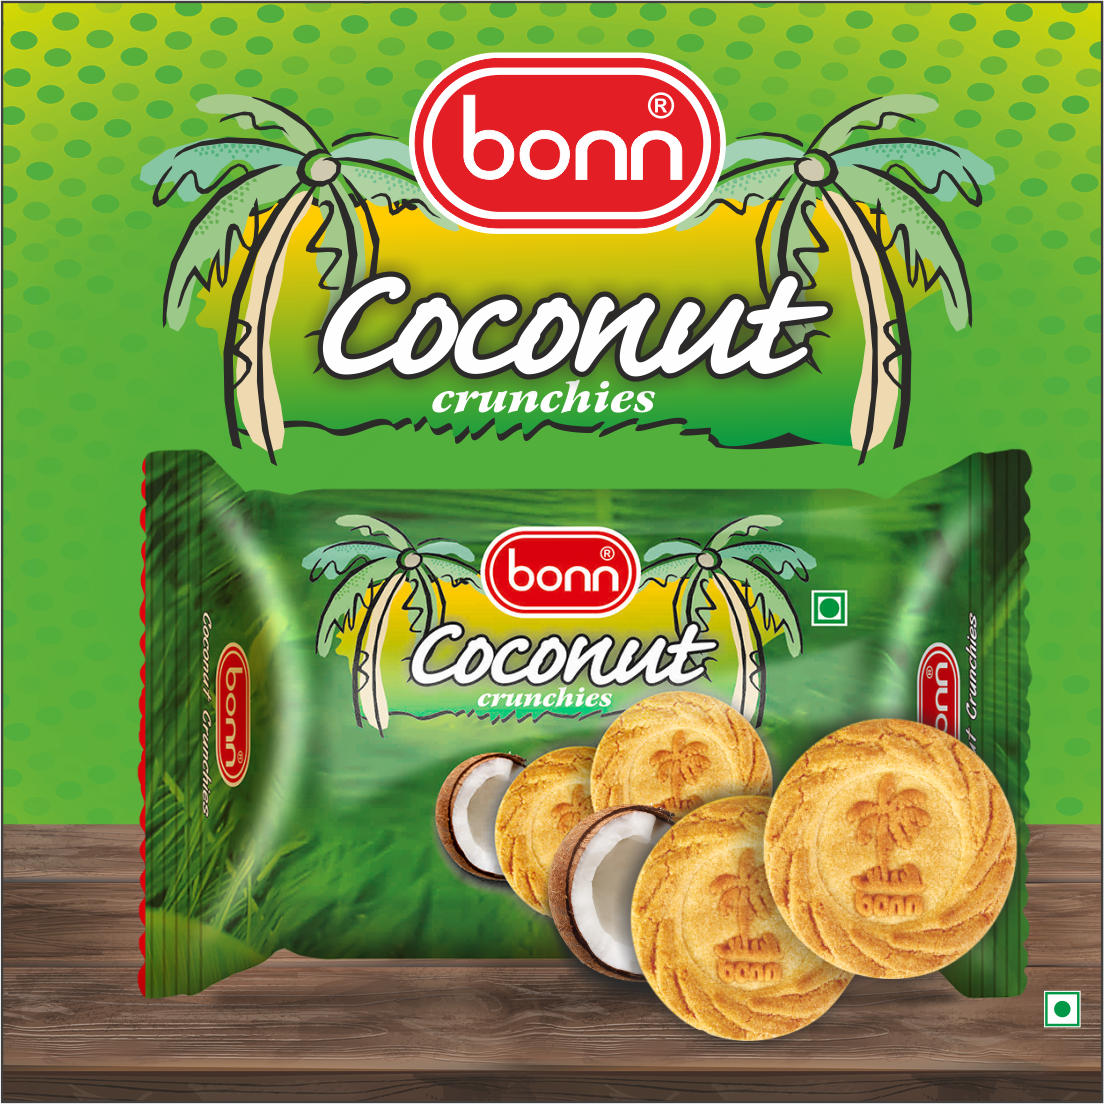 Bonn Coconut crunchies Biscuits